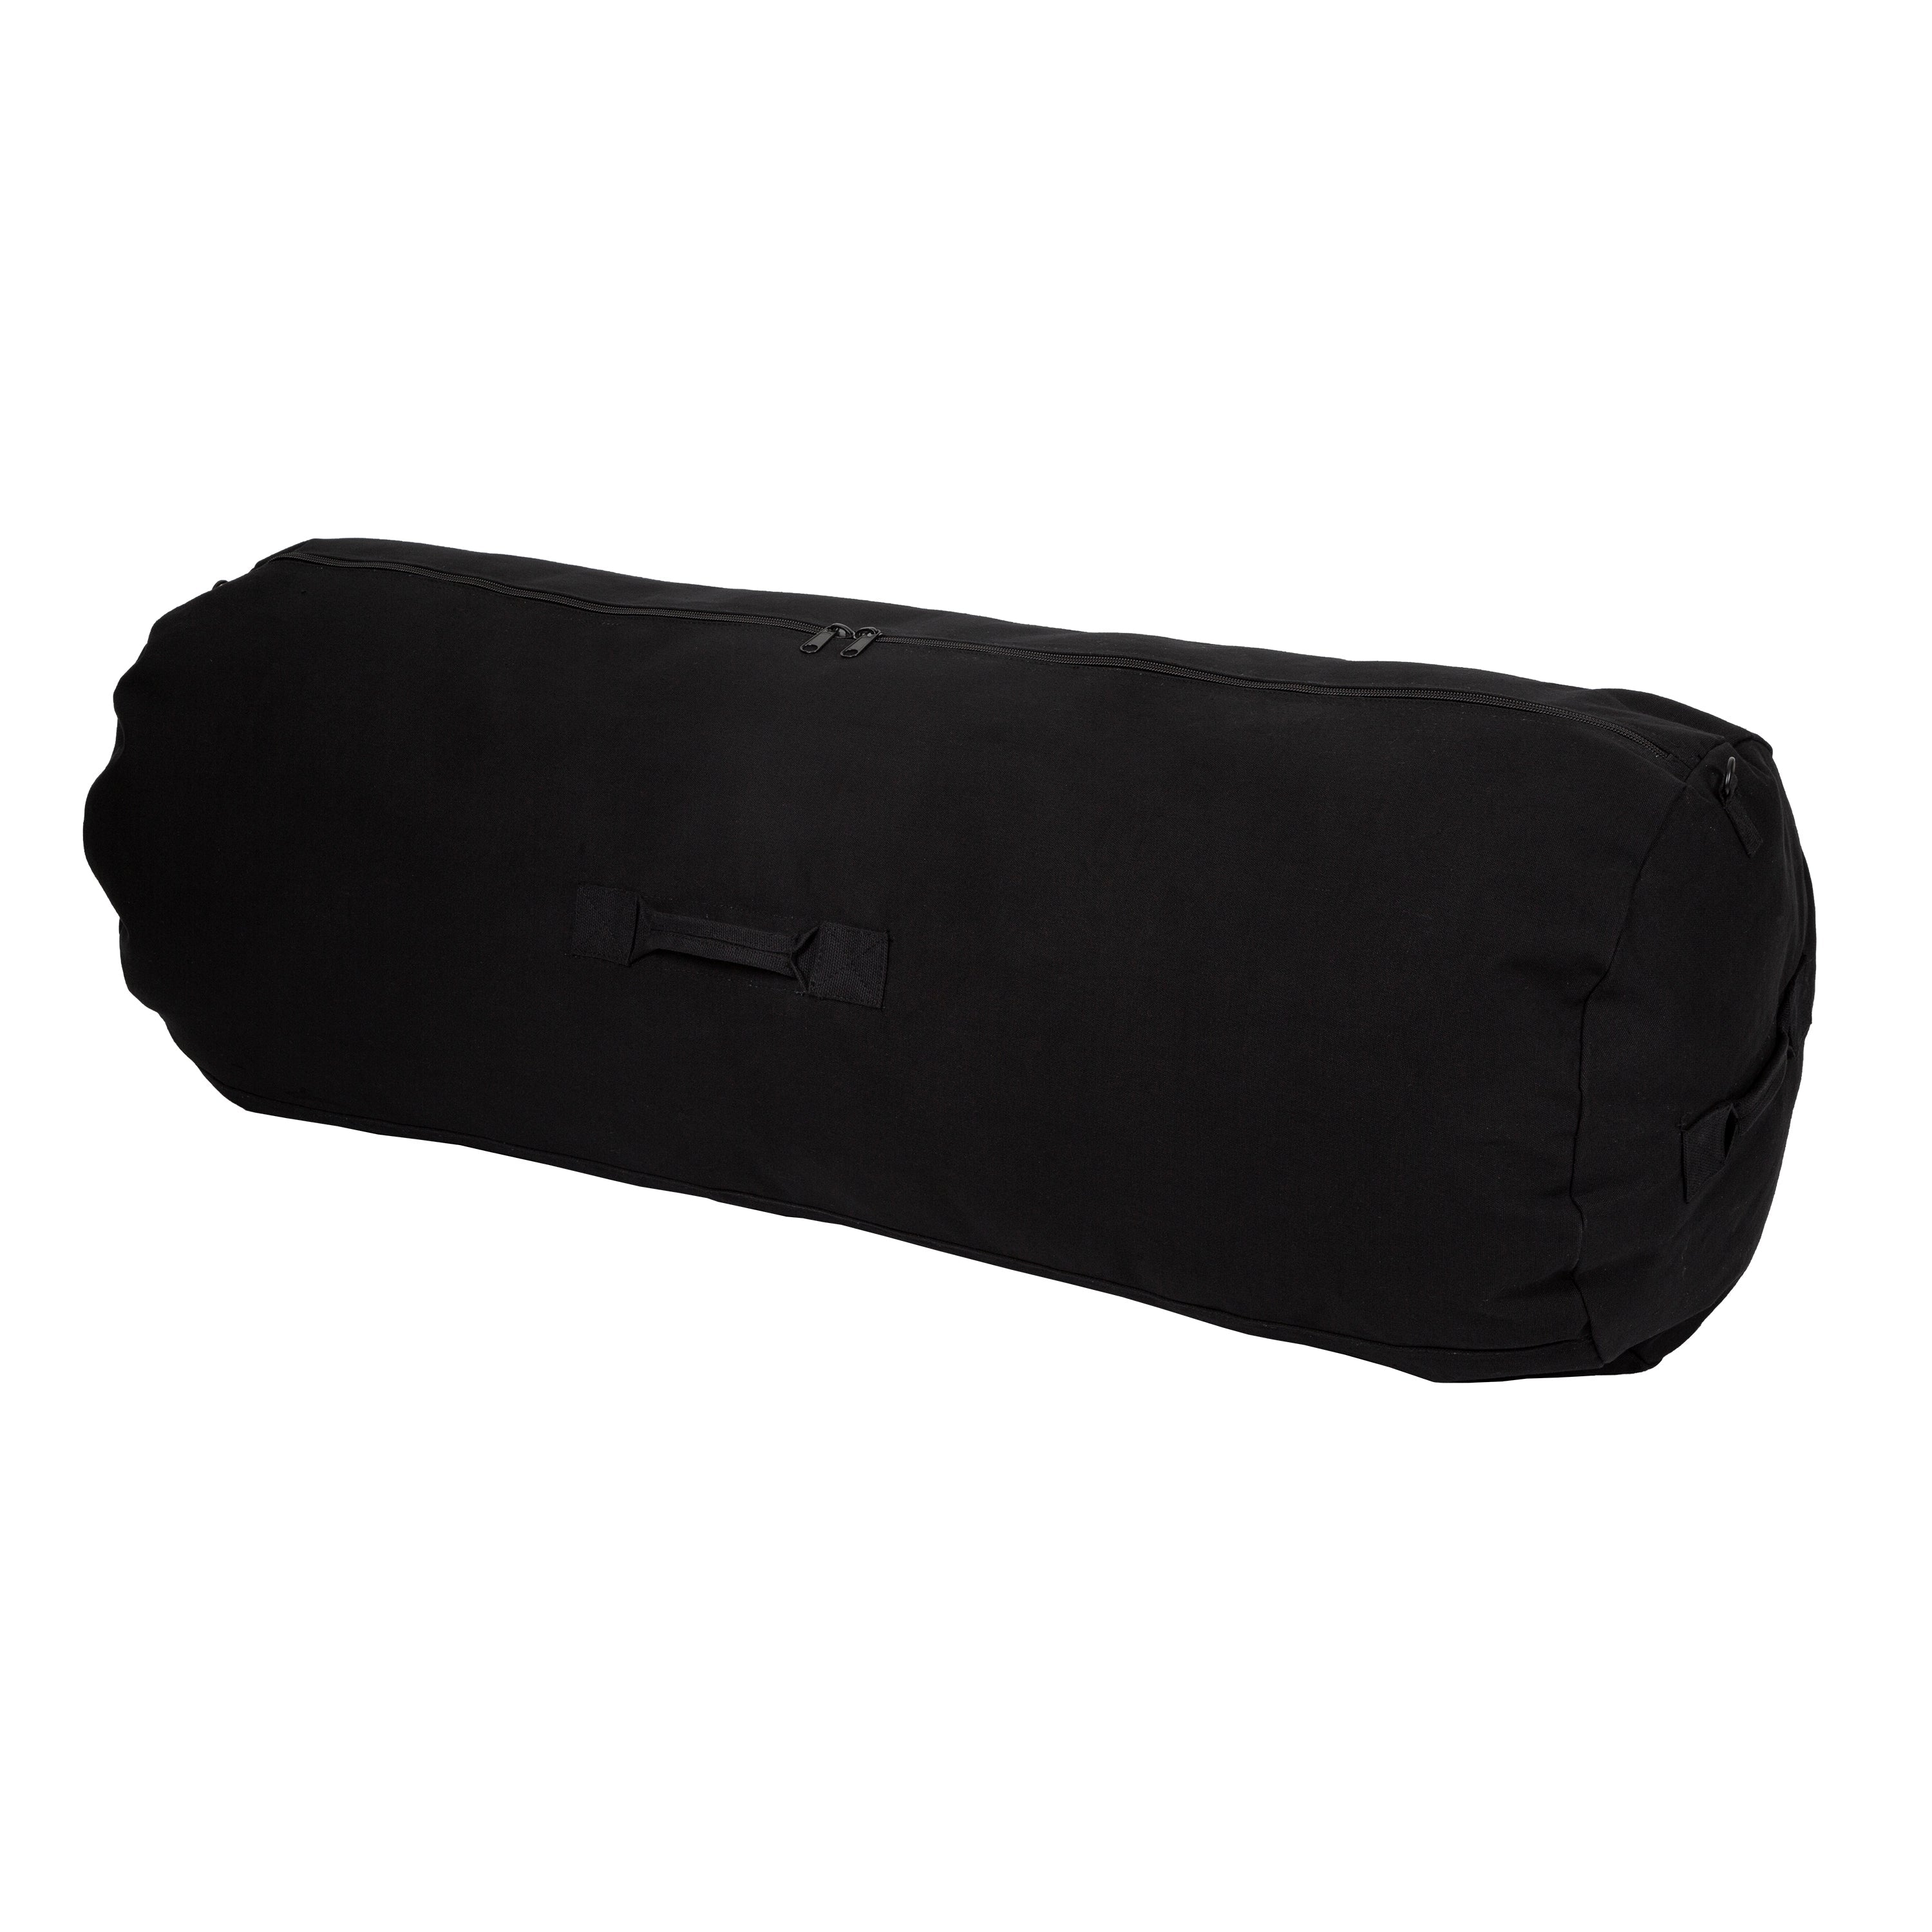 Duffel Bag With Zipper - Black - 50 In X 18 In X 18 In